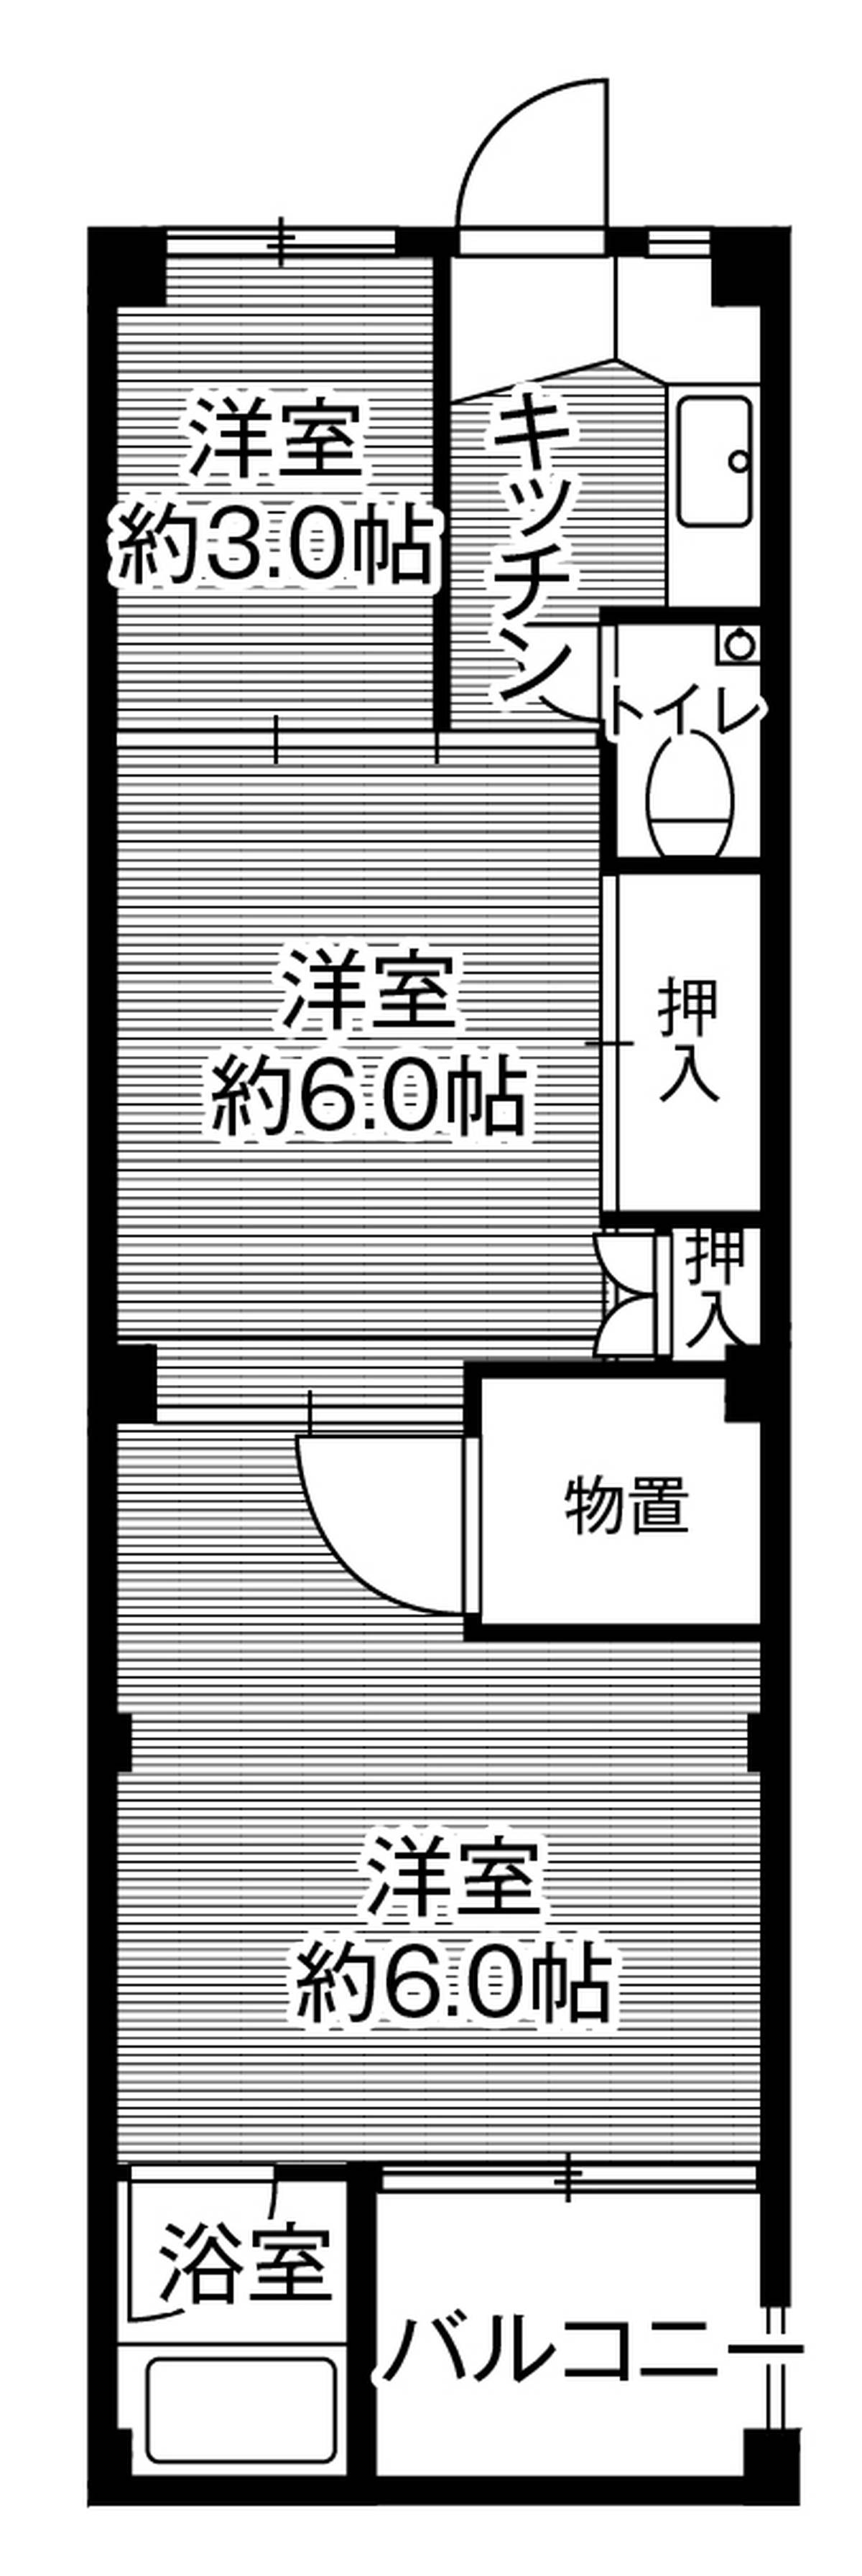 Sơ đồ phòng 3K của Village House Shimosarachi ở Hatsukaichi-shi